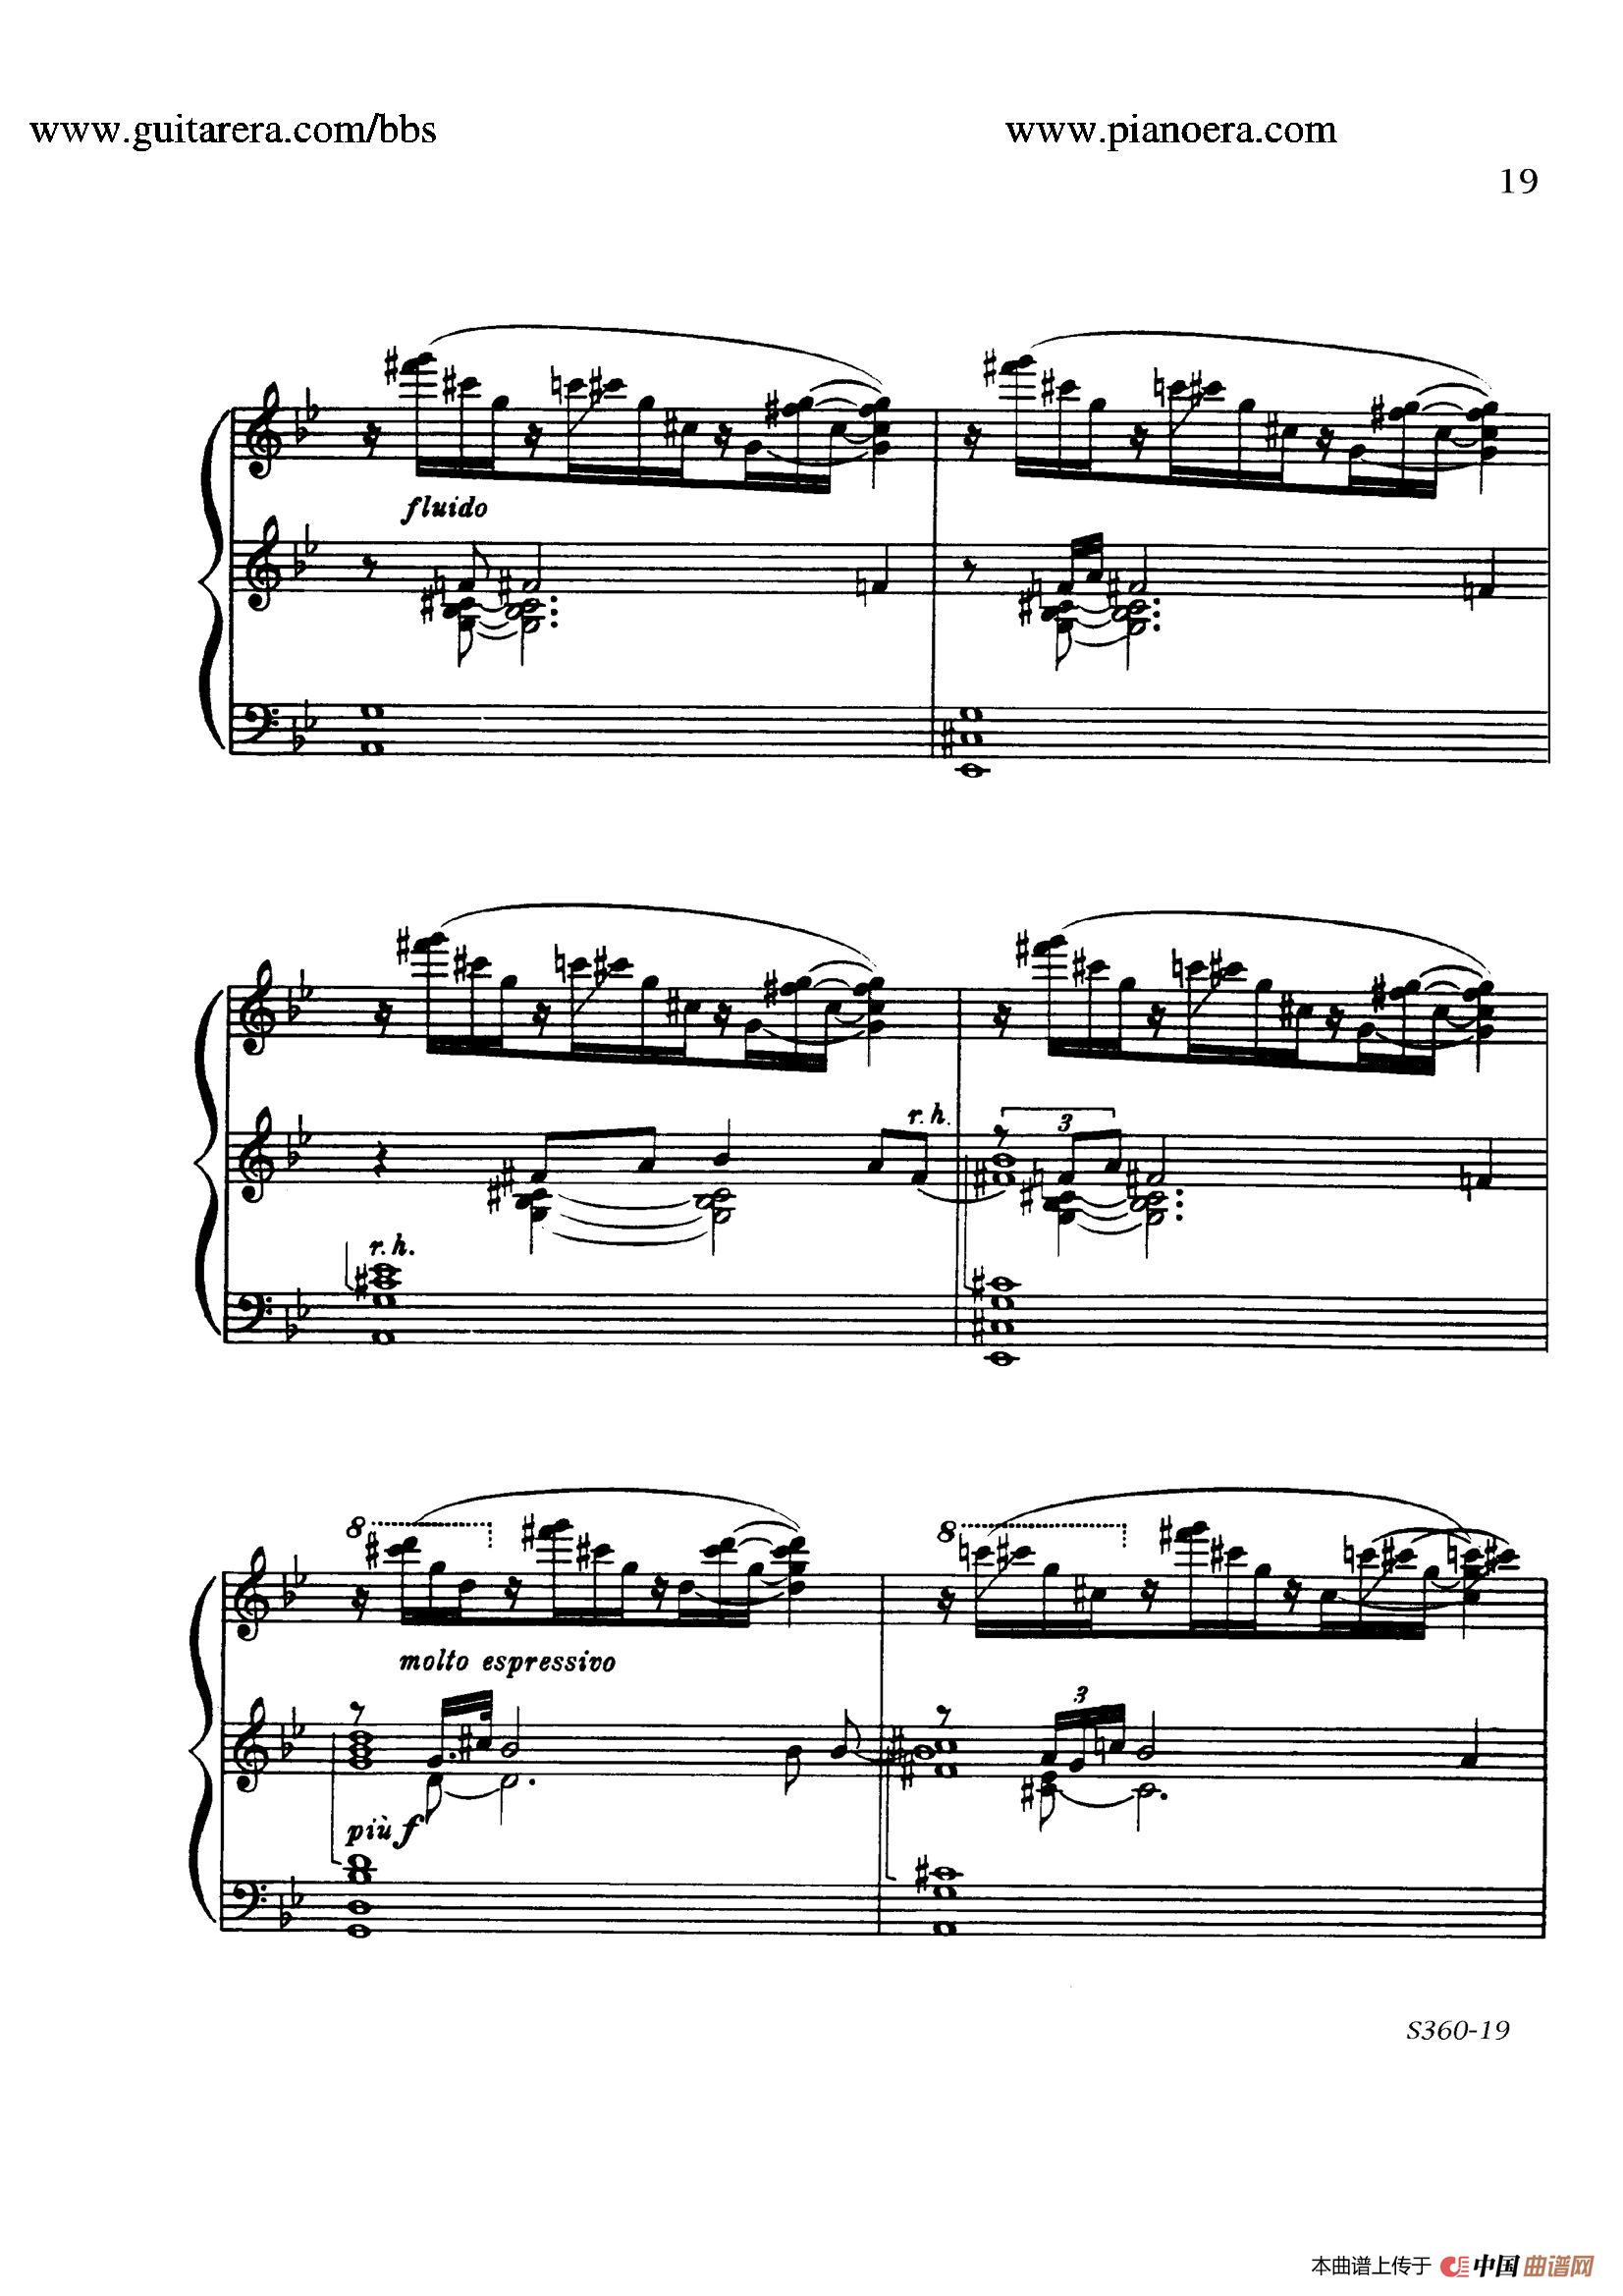 《Fourth Piano Sonata S.360》钢琴曲谱图分享